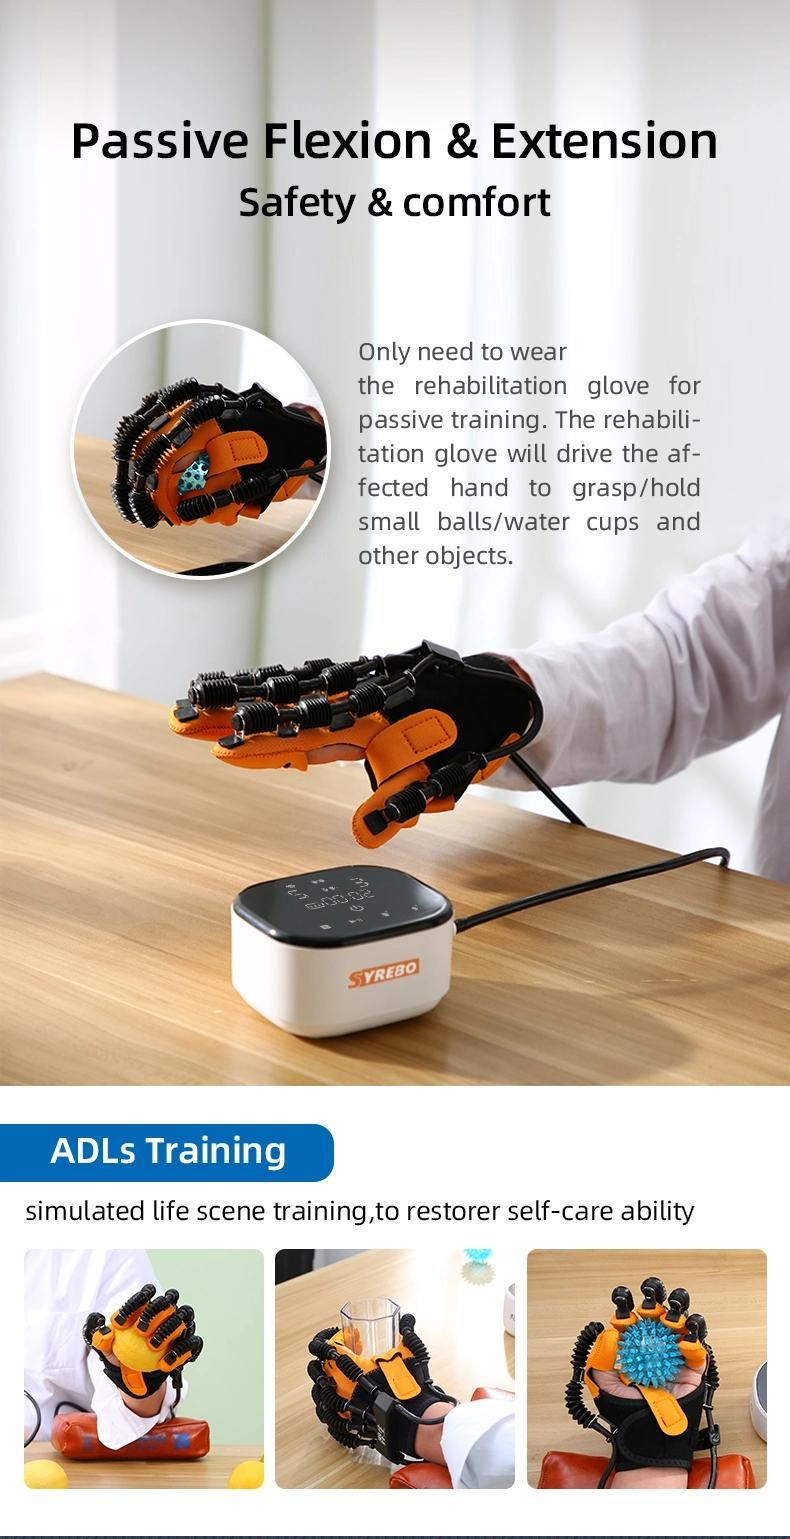 Stroke Hemiplegia Training Equipment Hand Function Finger Exercise Rehabilitation Robot Gloves